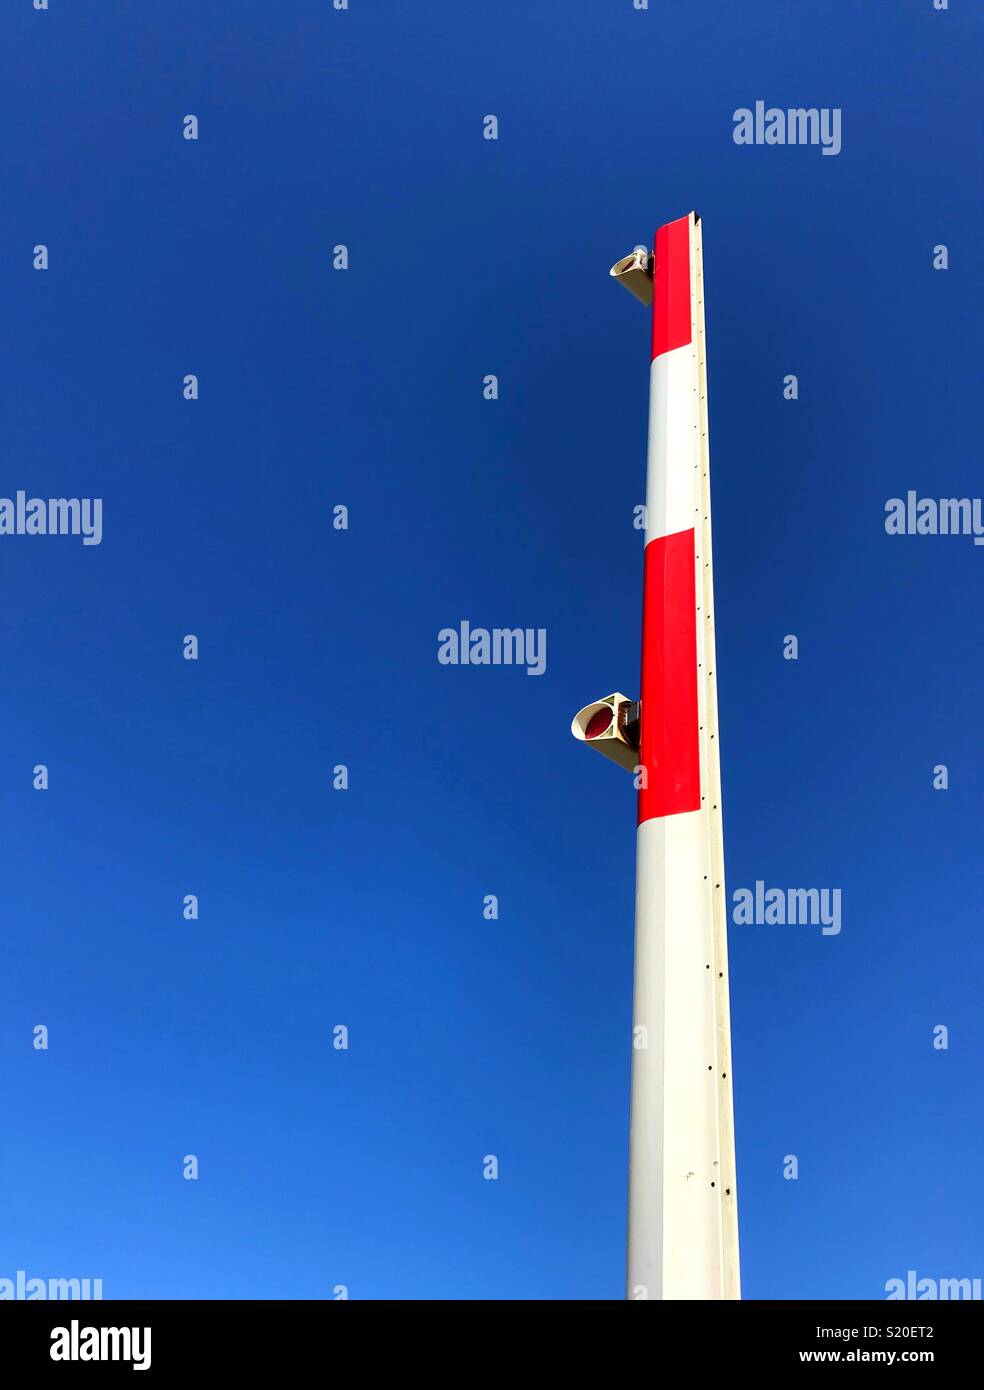 Brazo levantado de un cruce ferroviario barrera contra un cielo azul profundo Foto de stock